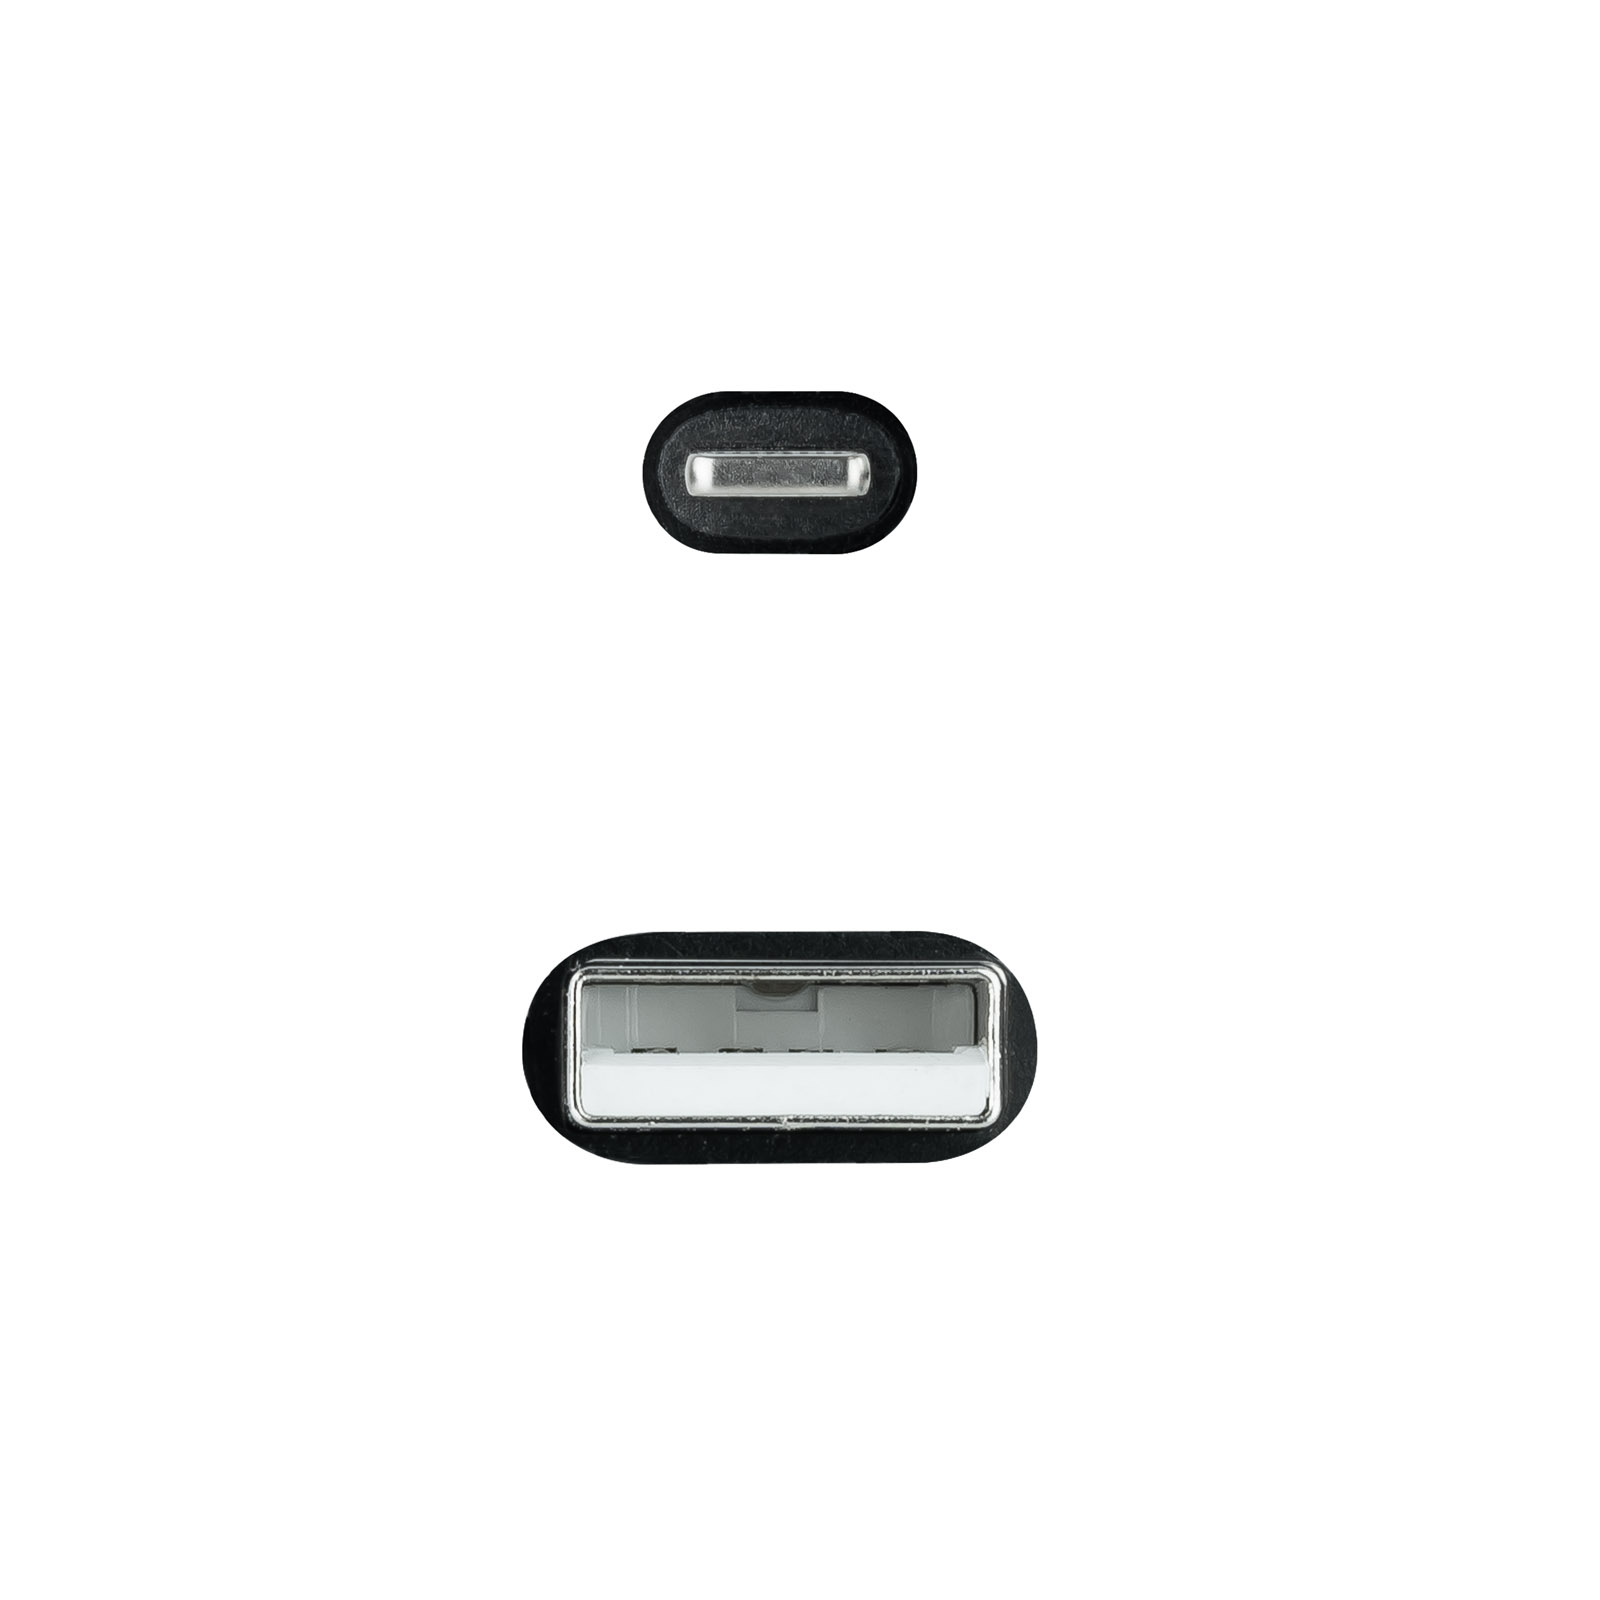 Câble Nanocable Lightning vers USB A/M - Blindé - 1m - Couleur Noir